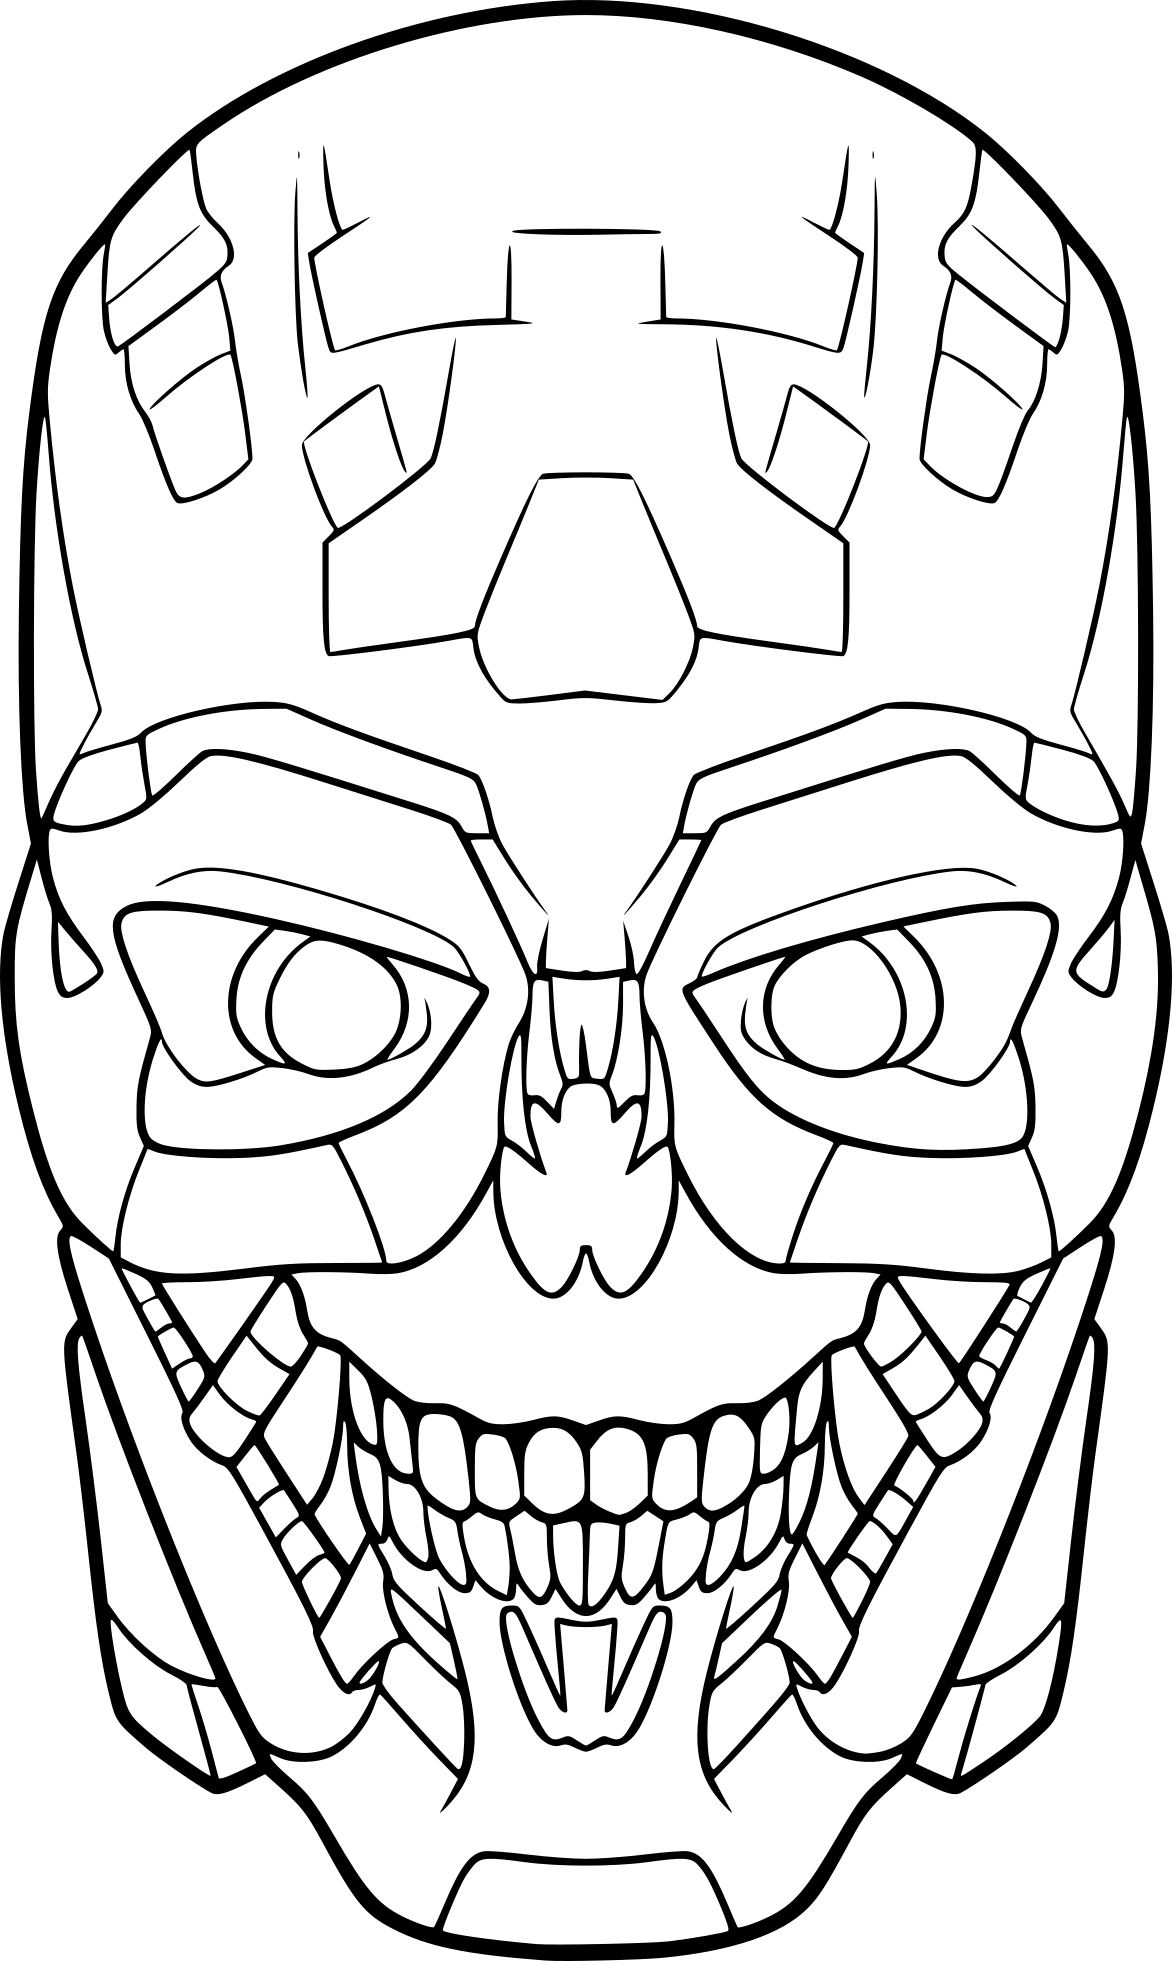 Terminator Head coloring page